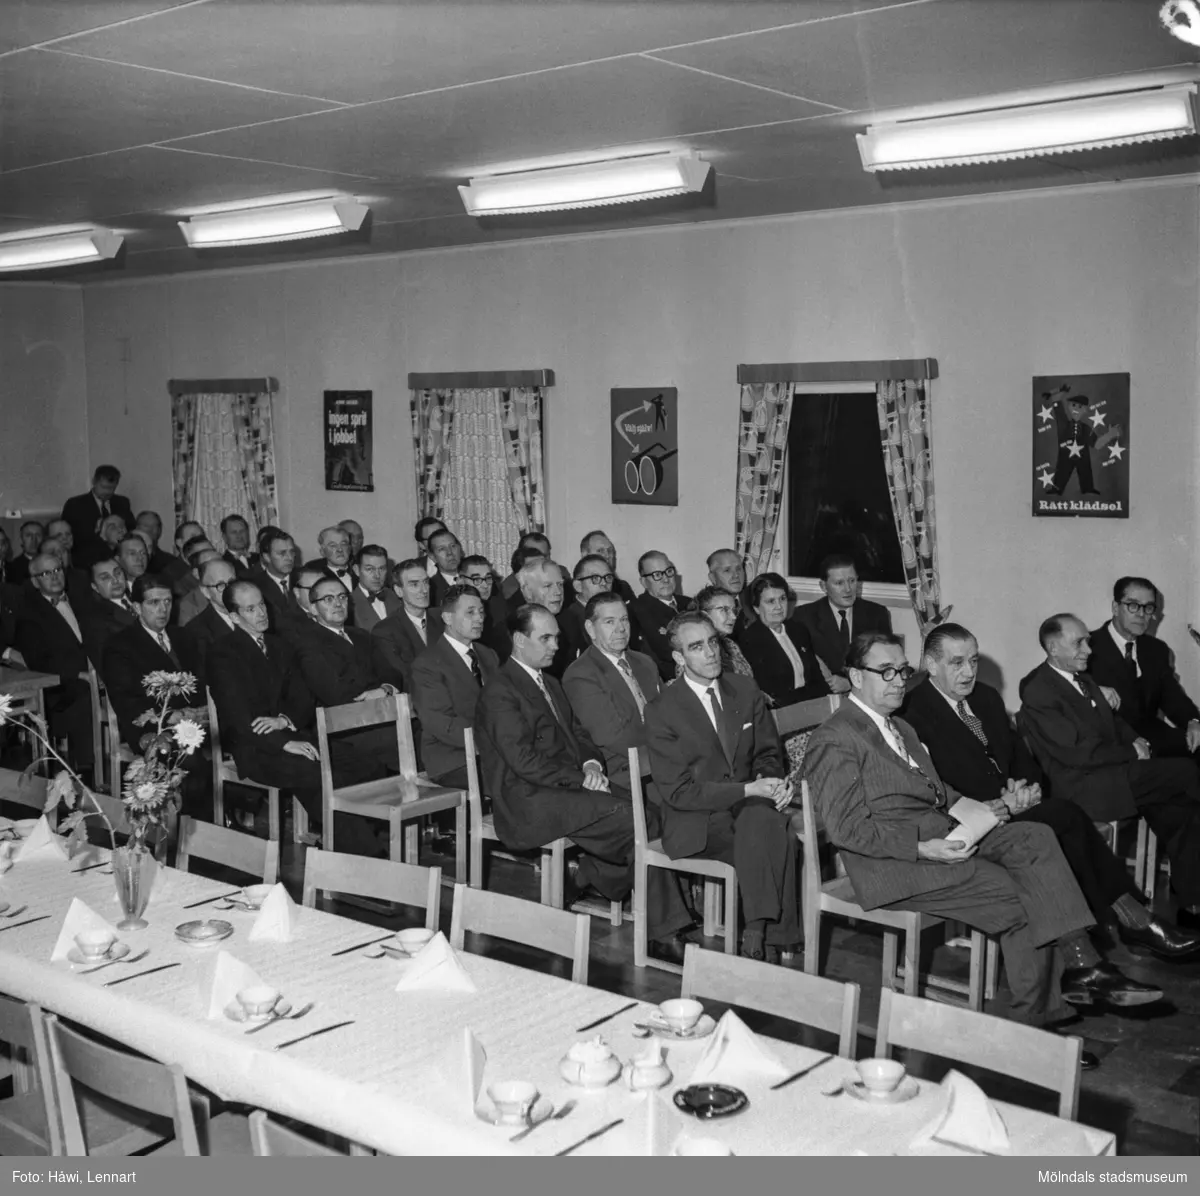 Pappersbruket apyrus i Mölndal, 13/11 1957. Föreningen för arbetarskydds guldmedalj utdelas till Nils Nilsson och Carl Nygren.